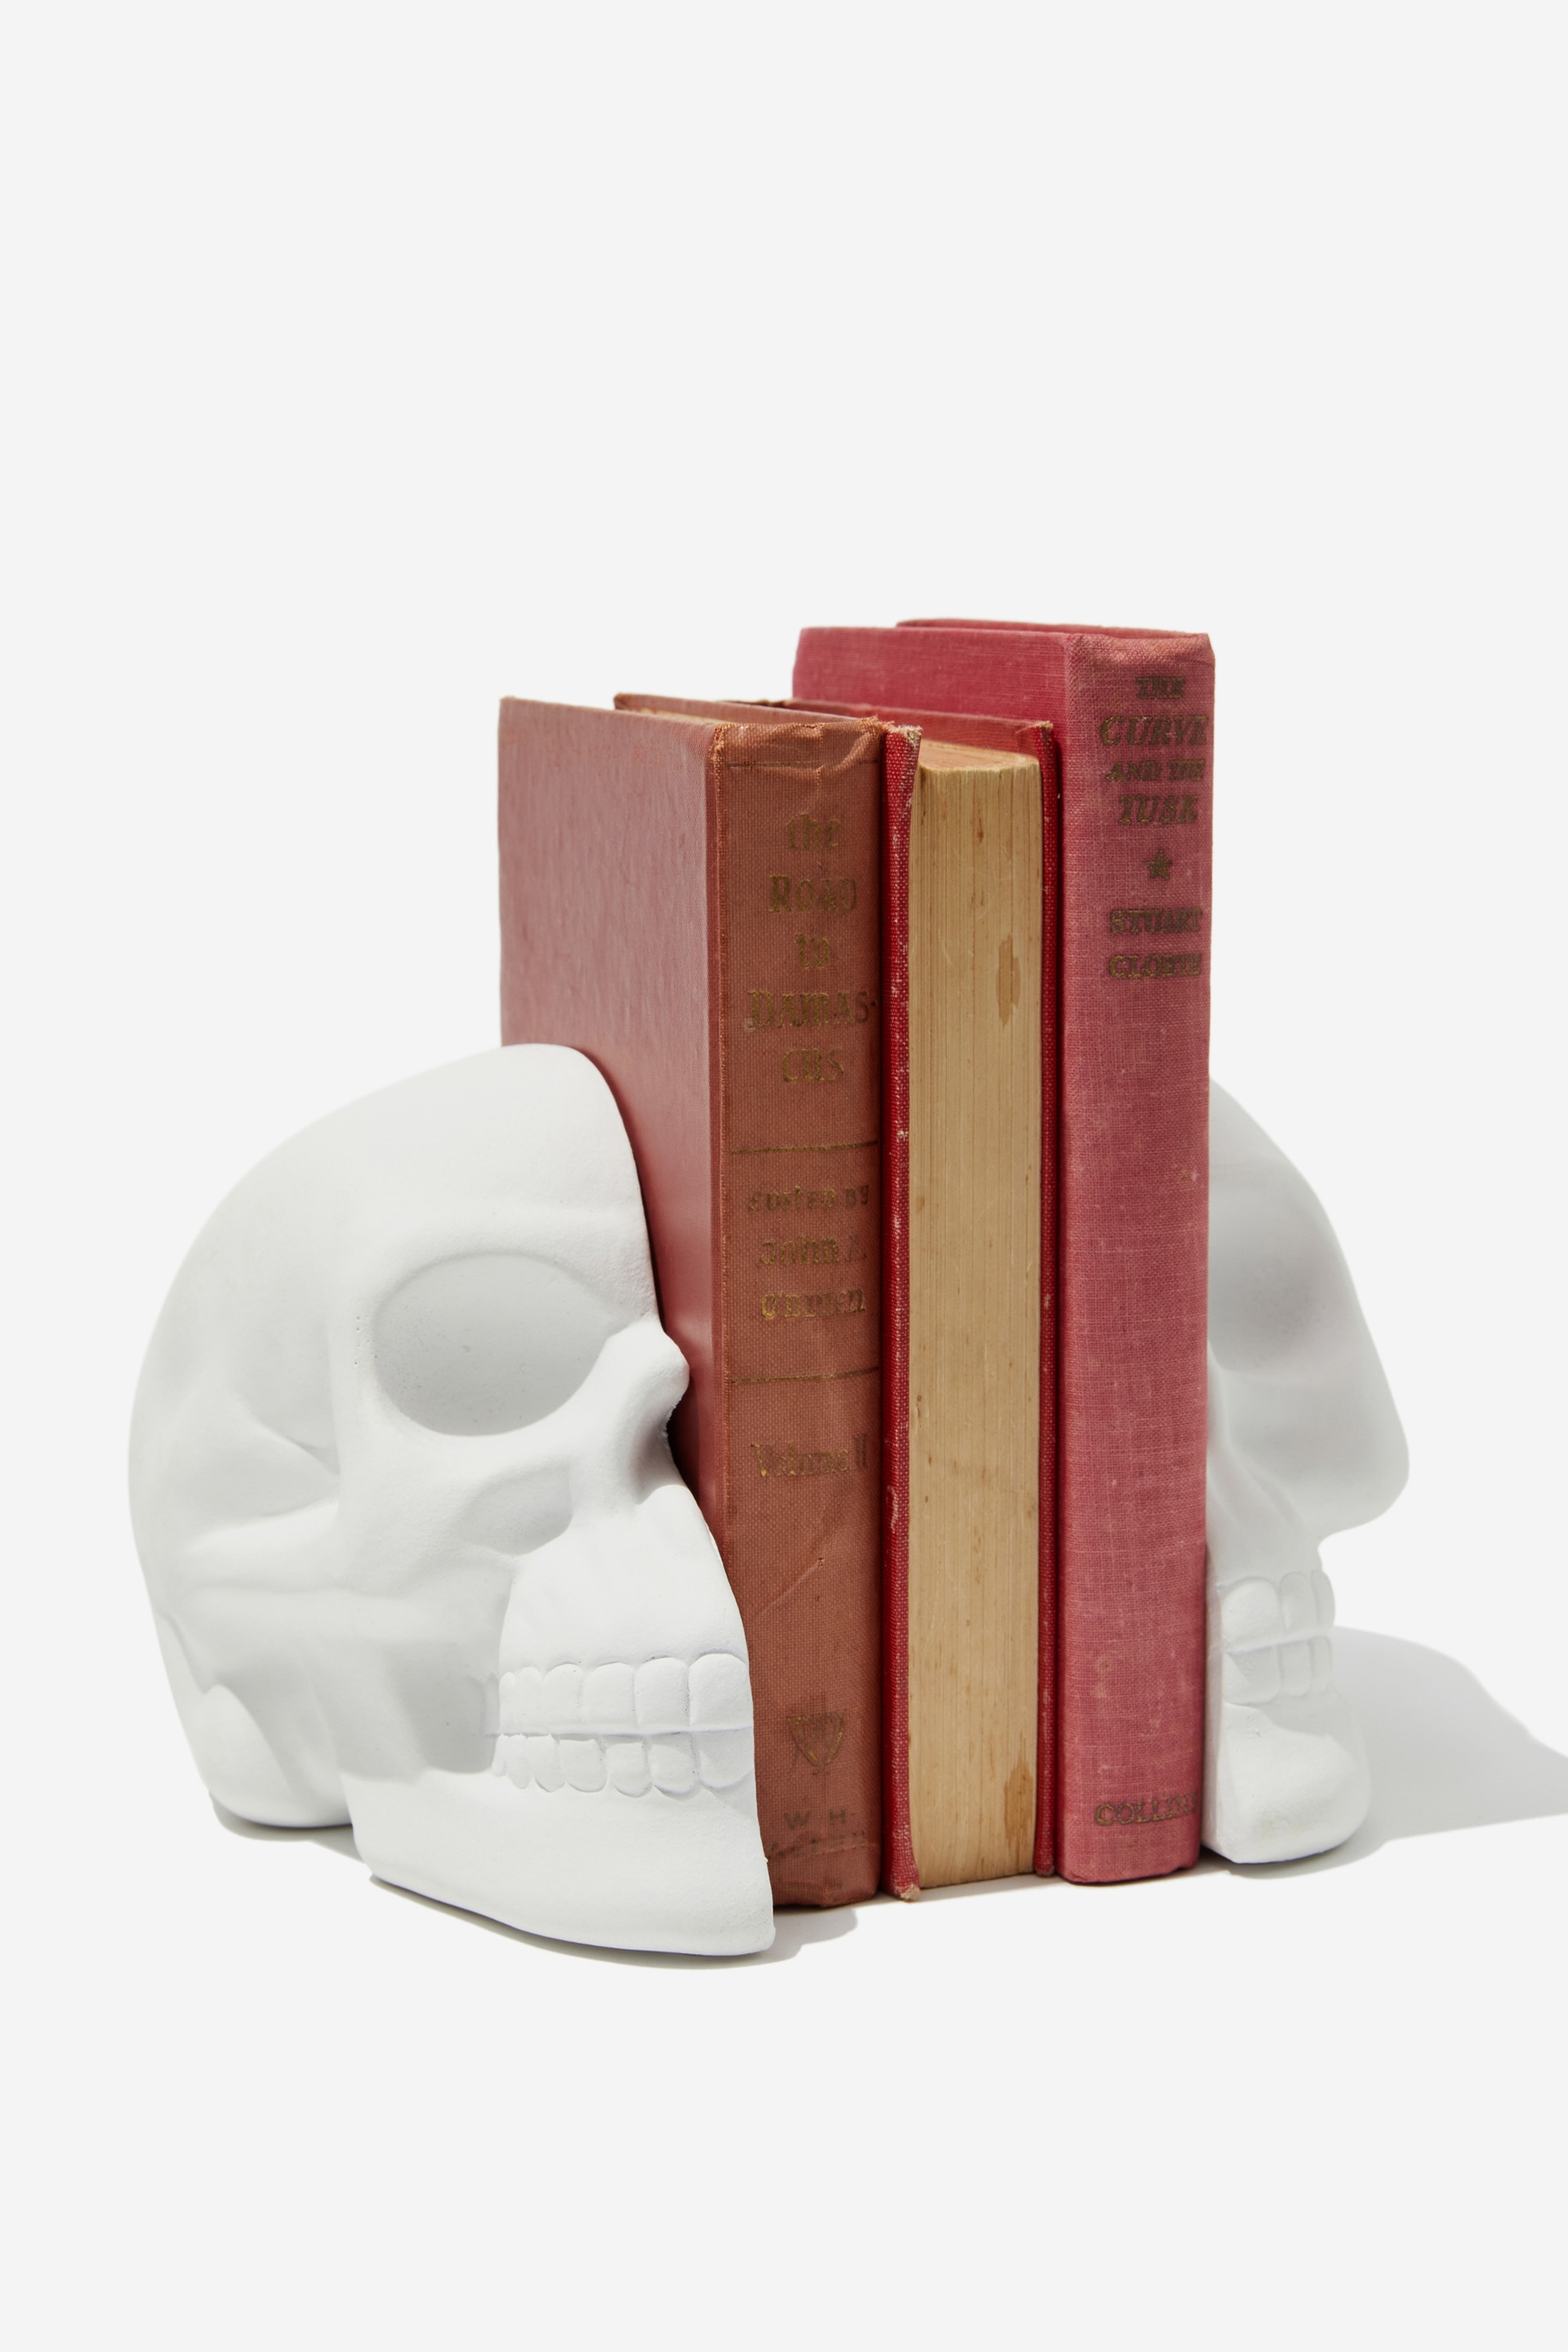 Typo - Blocked In Book Holder - White skull!